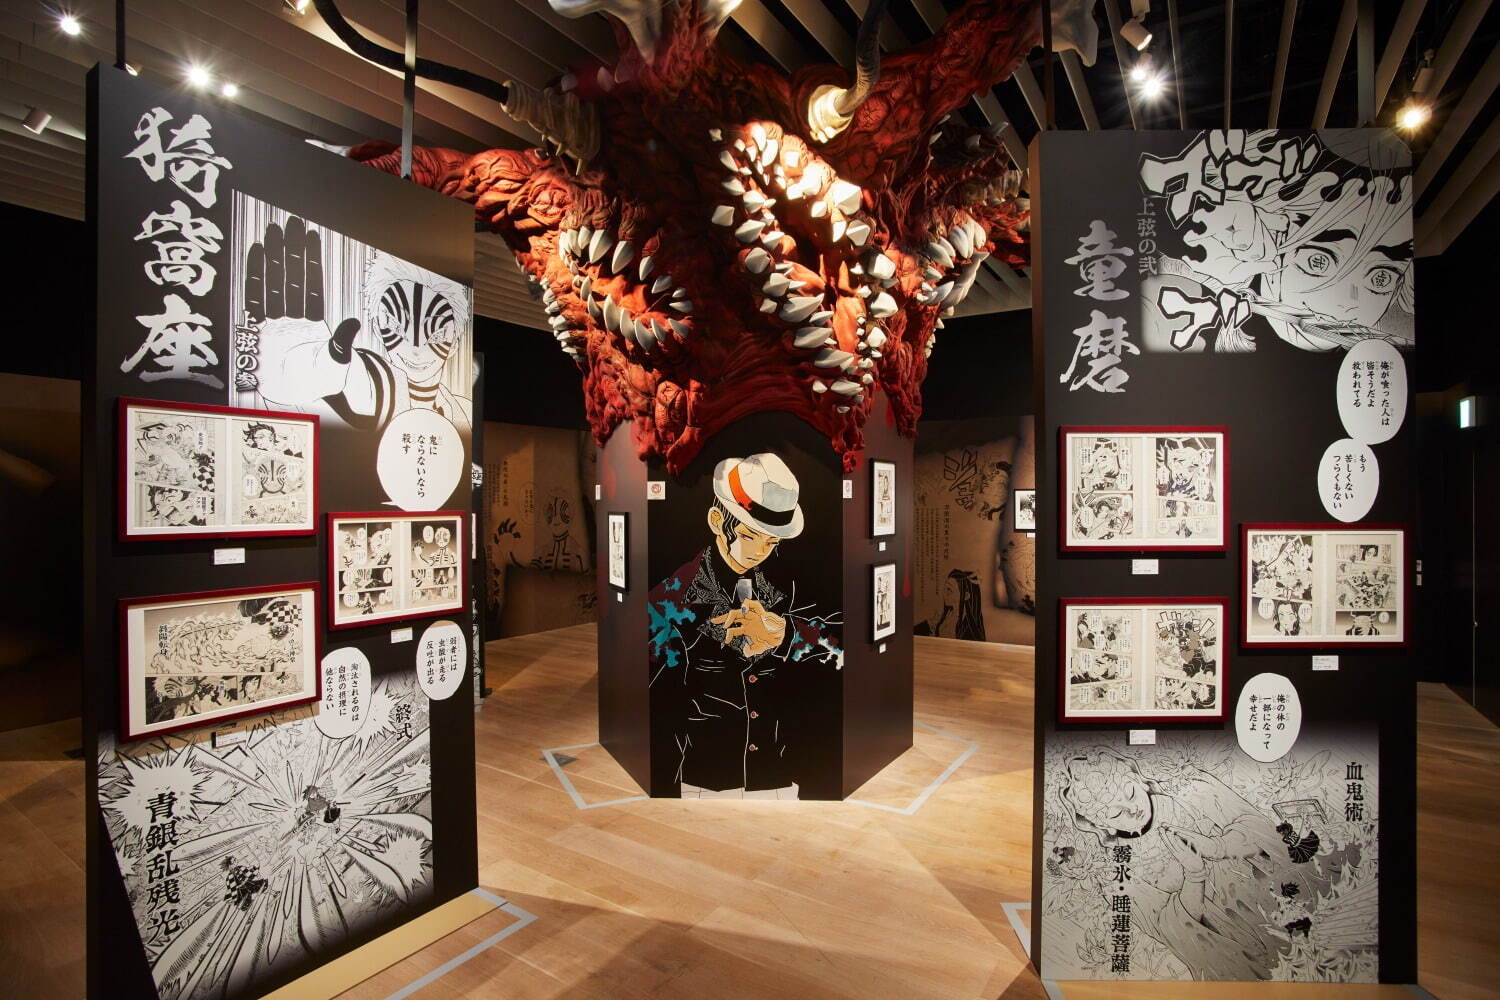 Demon Slayer: Kimetsu no Yaiba by Koyoharu Gotouge exhibition in Tokyo